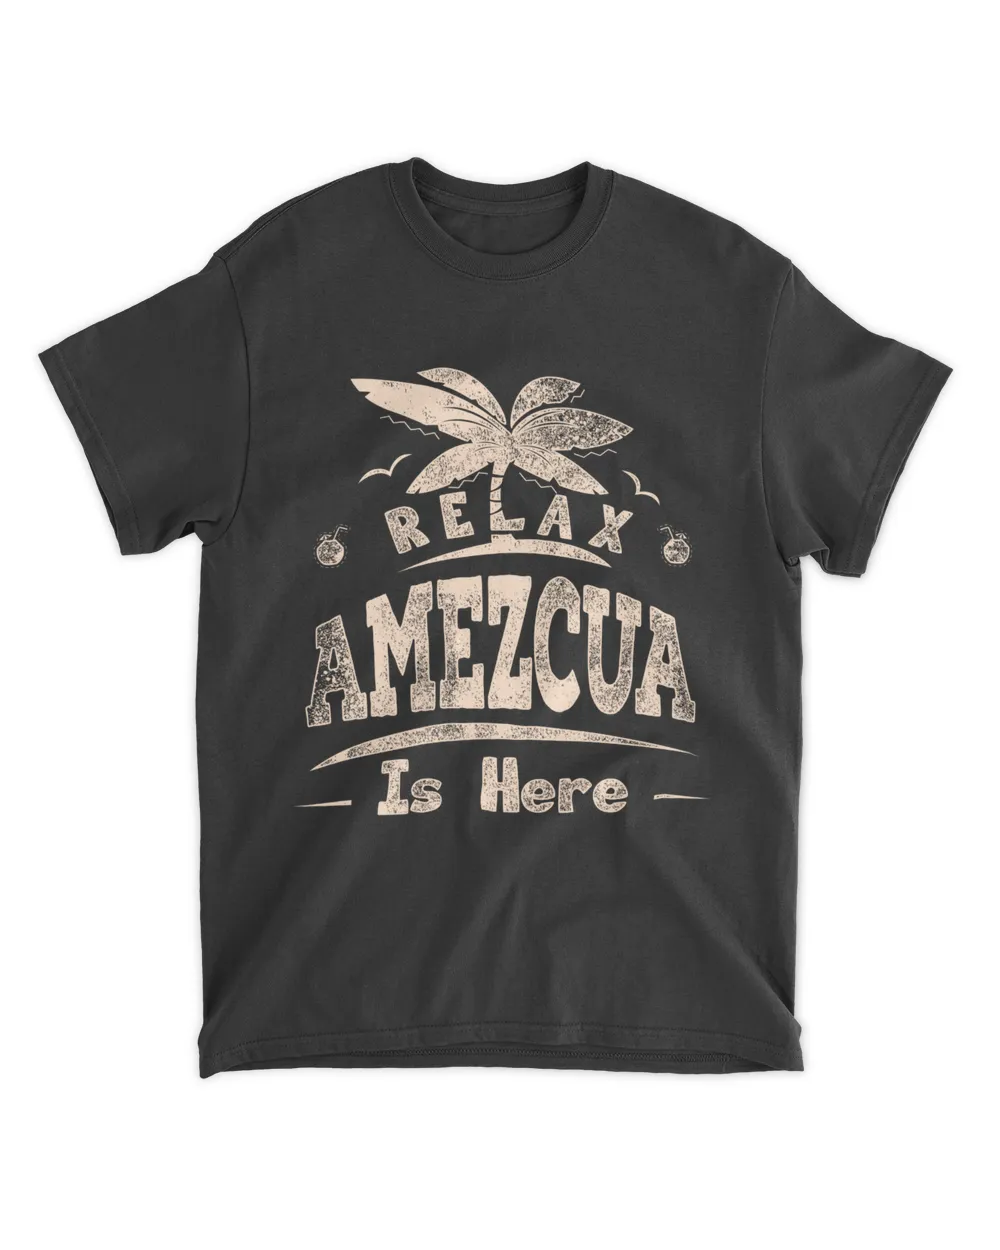 AMEZCUA HERE